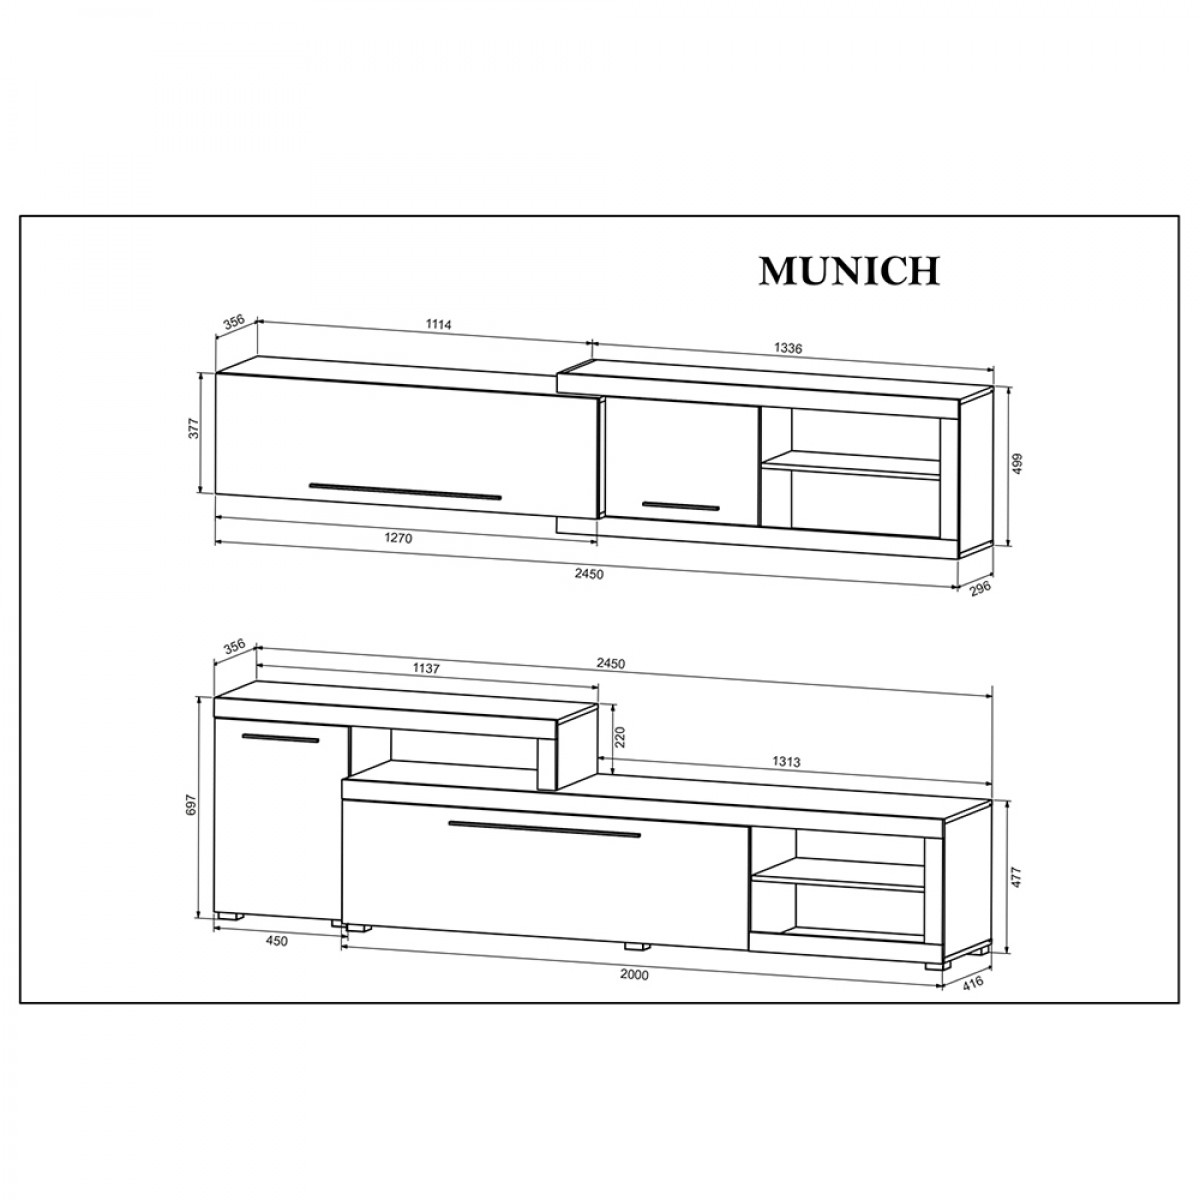 Munich σύνθεση σαλονιού σε γκρι και φυσική απόχρωση σετ 3 τεμαχίων 245x41.5x190 εκ